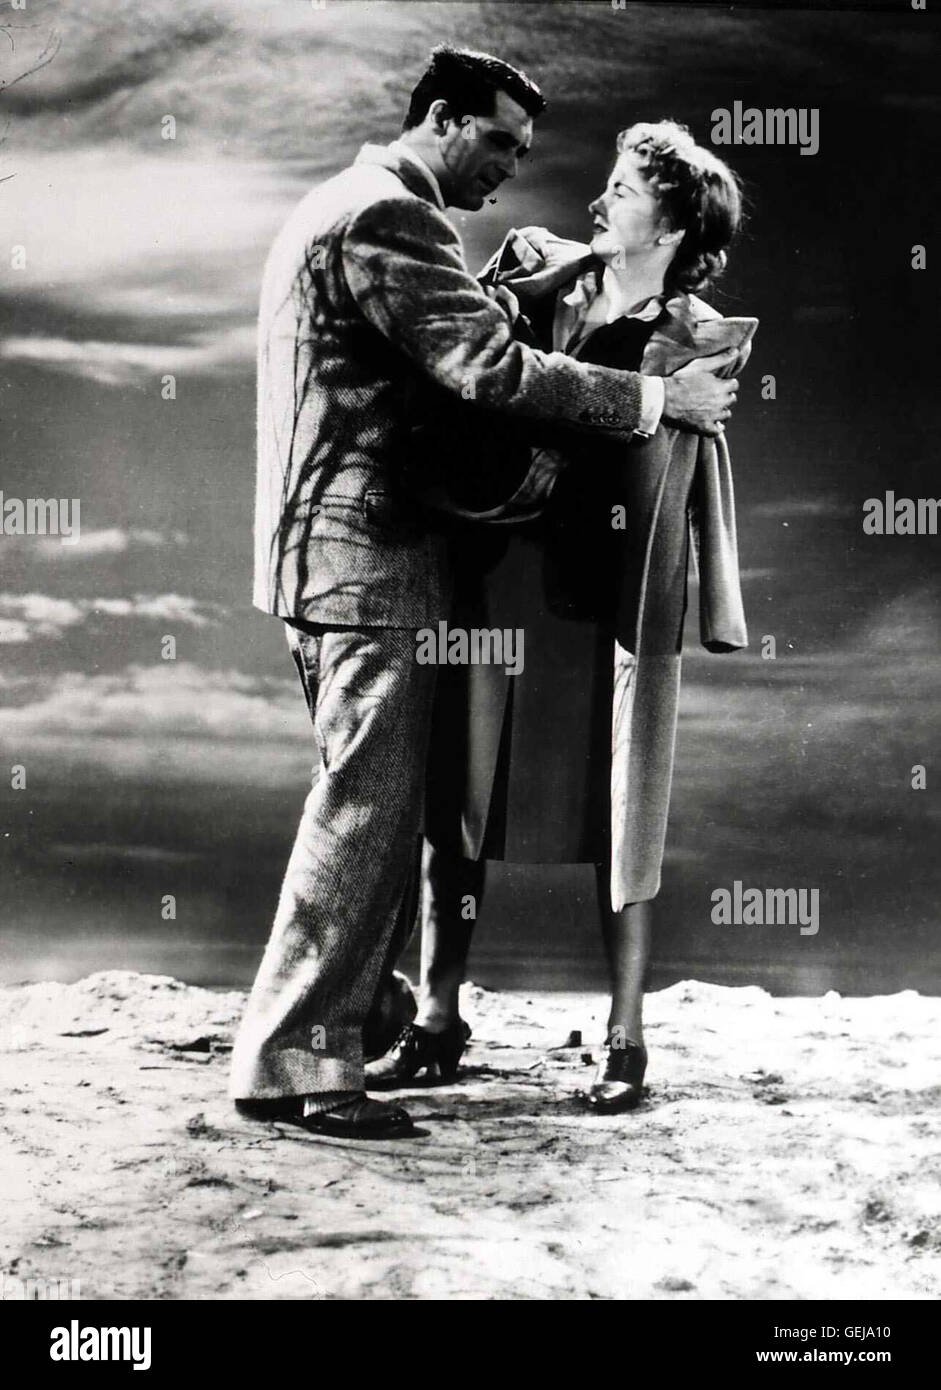 Cary Grant, Joan Fontaine  Als Johnnies (Cary Grant) leichtsinniger Freund Beaky ums Leben kommt, fühlt sich Linda  (Joan Fontaine) plötzlich in Gegenwart ihres Mannes nicht mehr sicher. *** Local Caption *** 1941, Suspicion, Verdacht Stock Photo